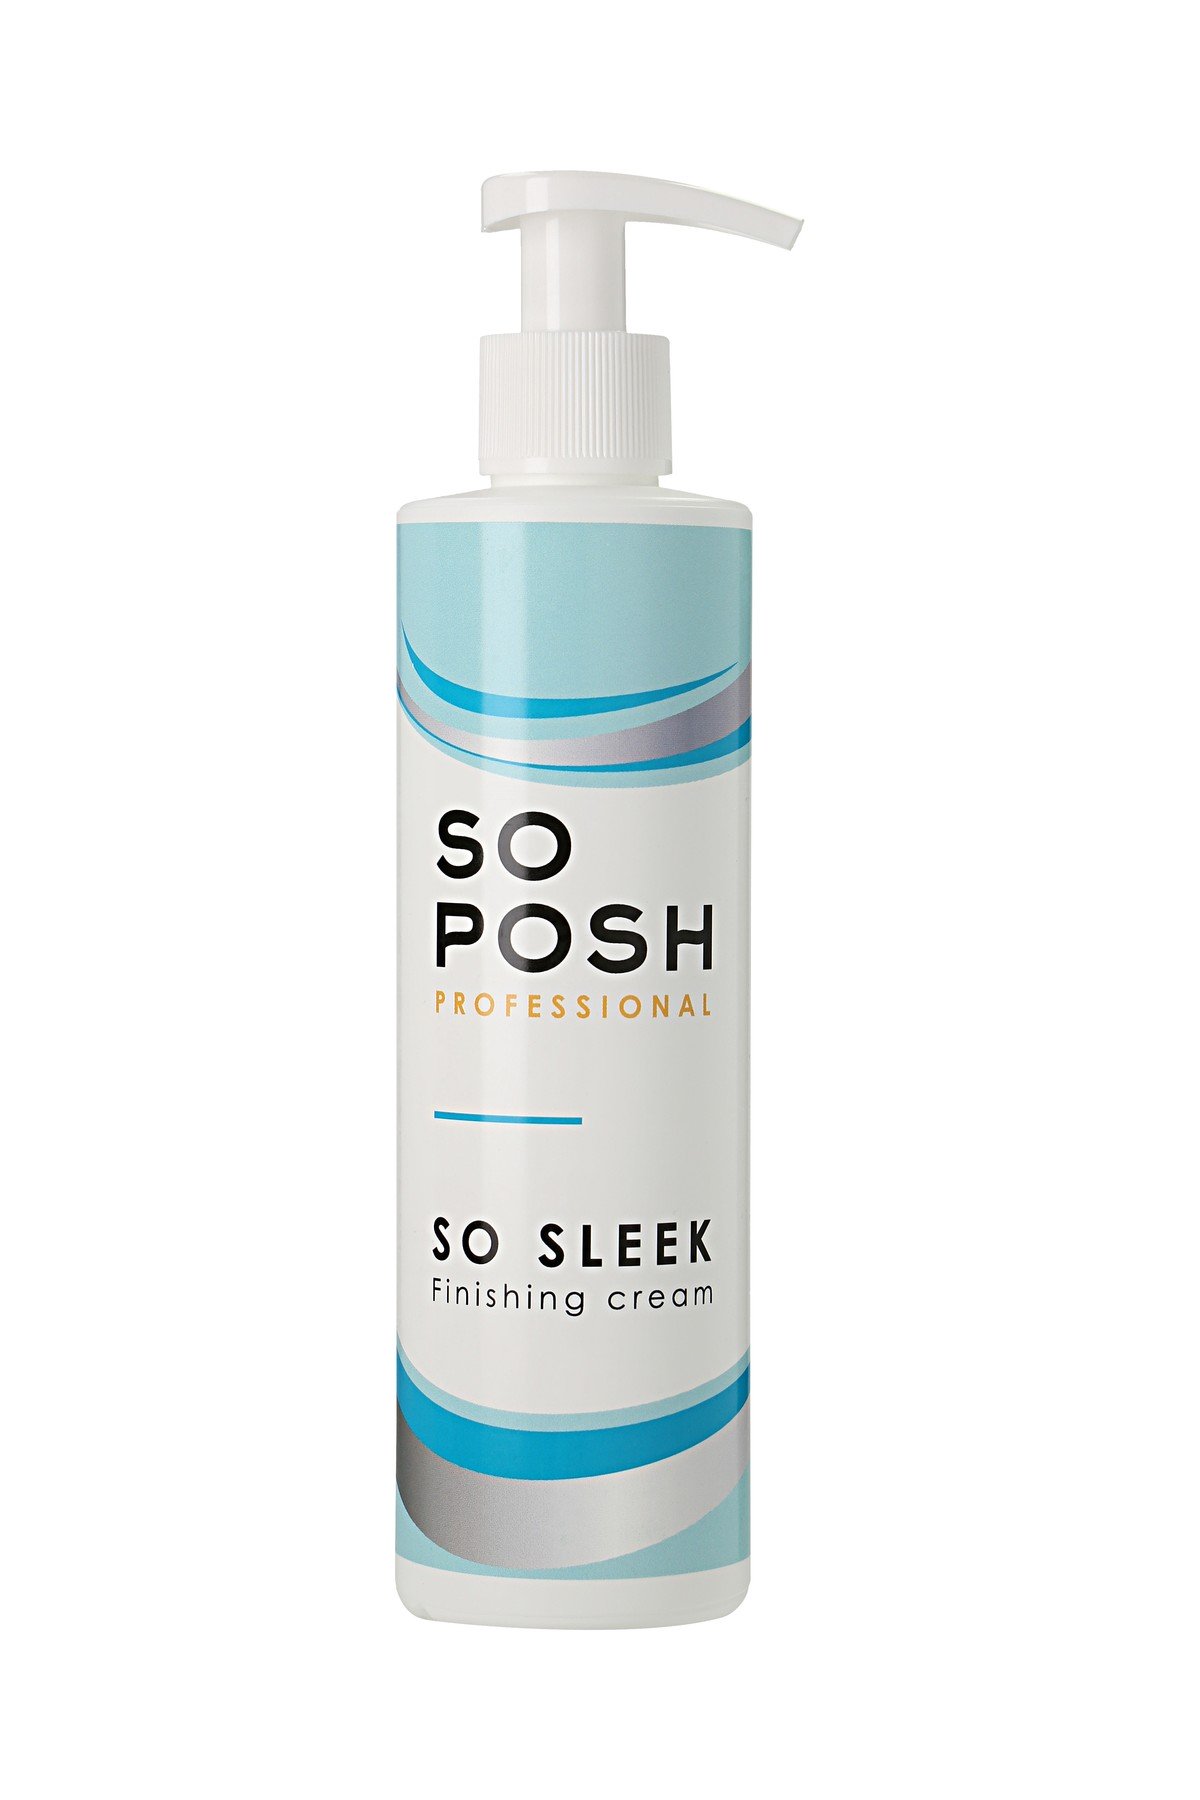 *SO POSH, So Sleek Finishing Cream. Финишный крем для выпрямления шерсти 250мл. (Эстония).